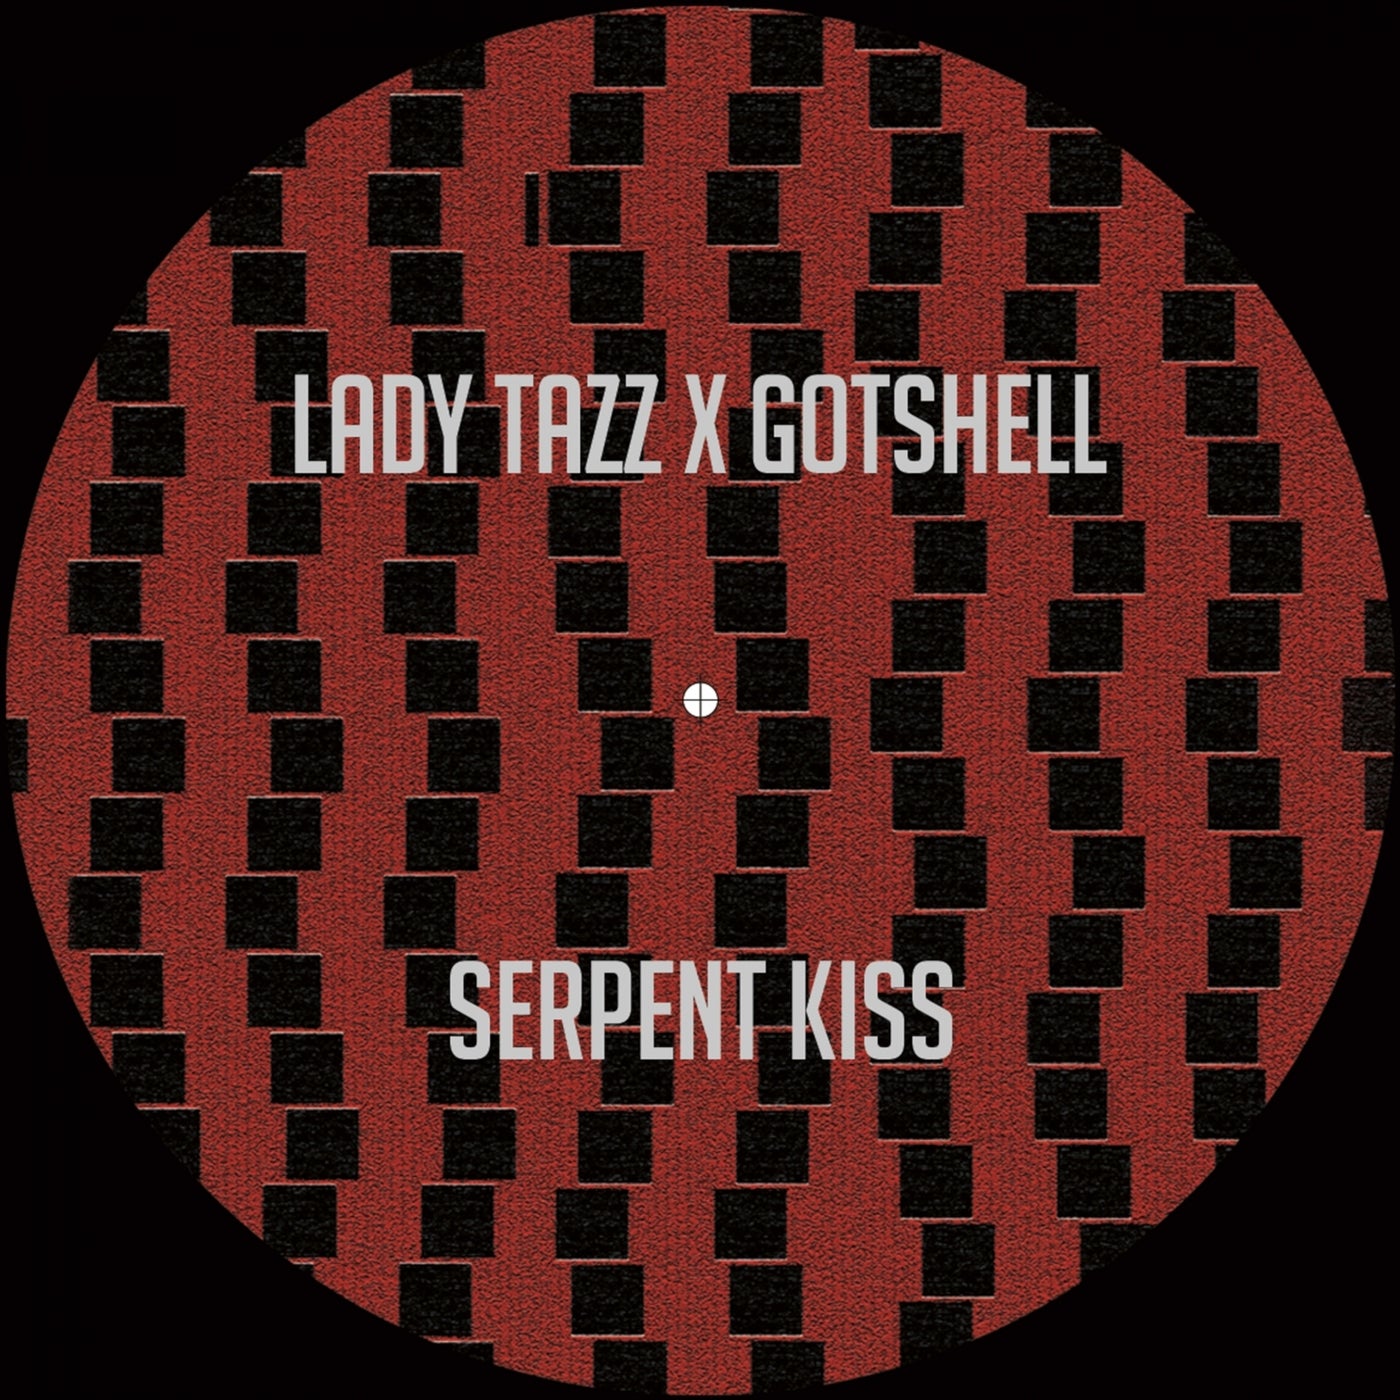 Serpent Kiss